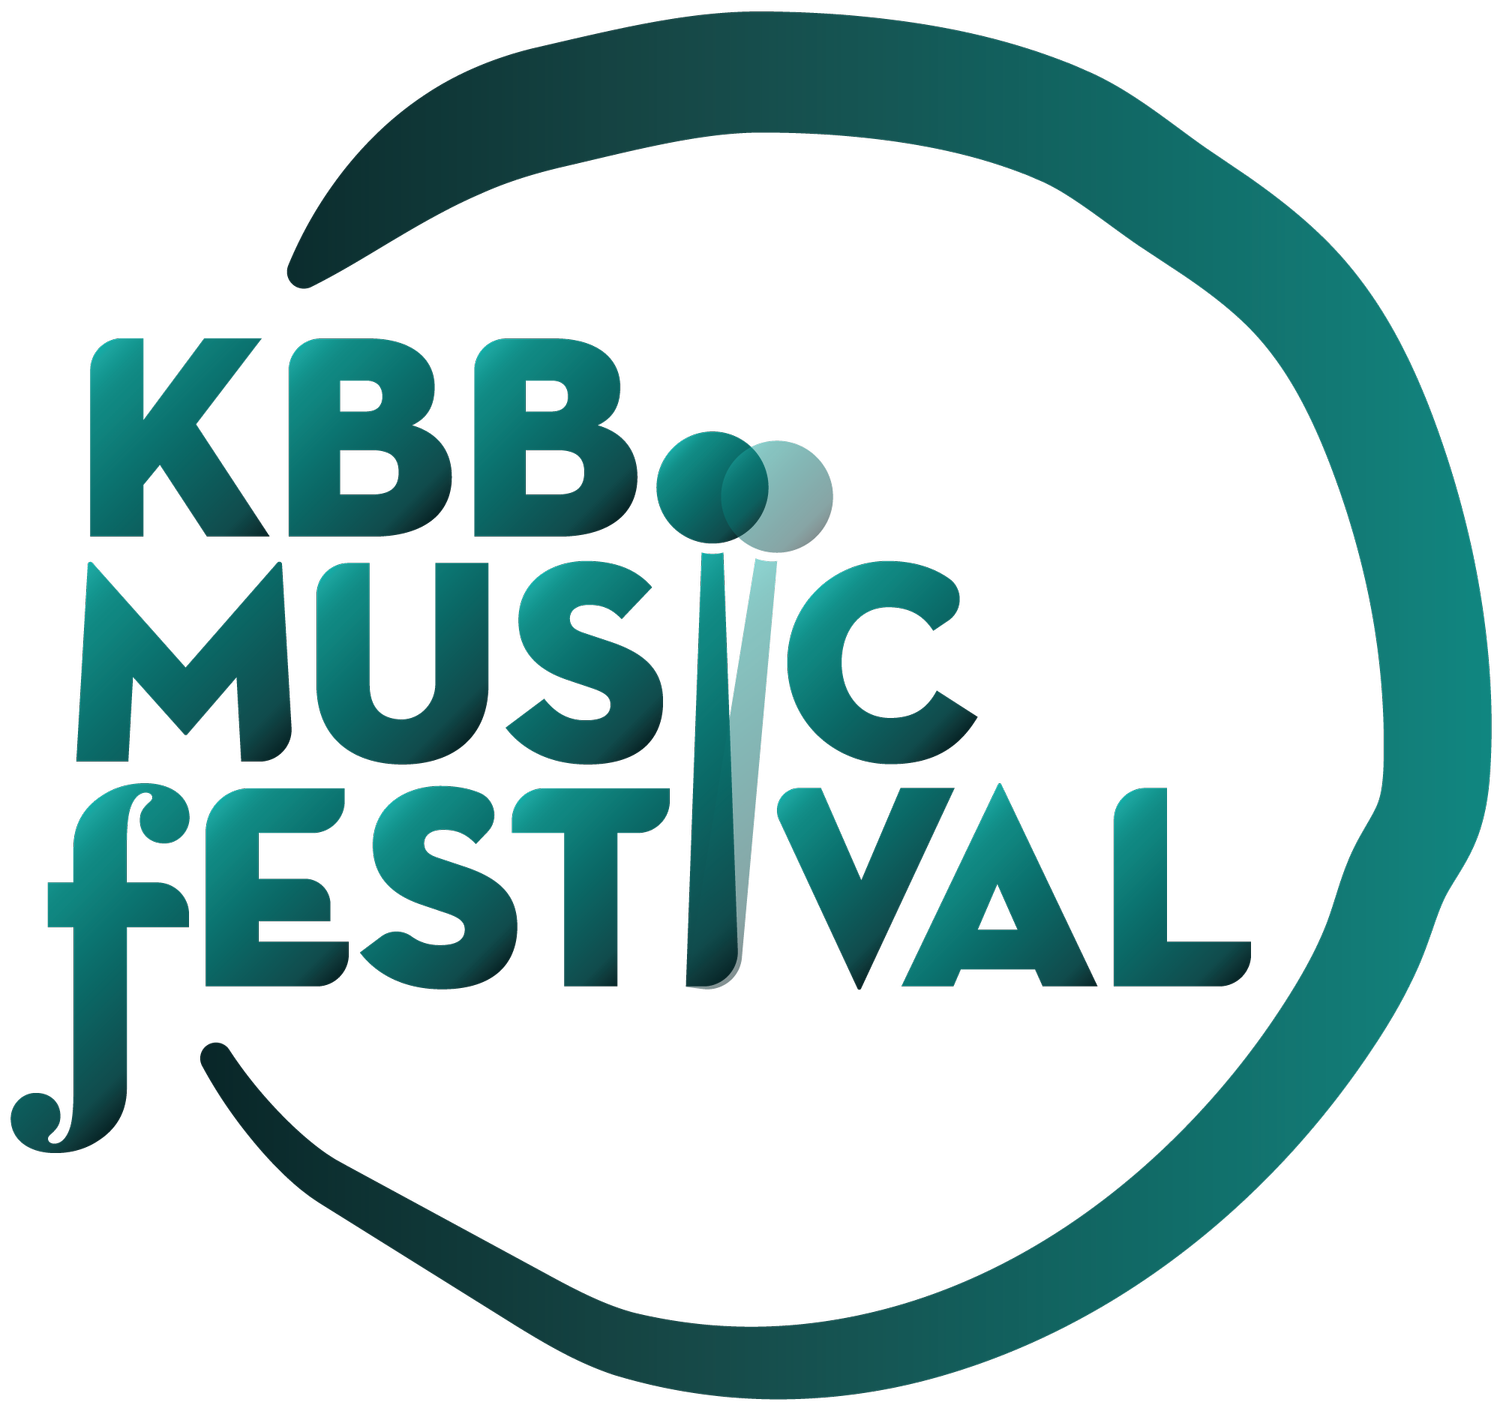 KBB MUSIC FESTIVAL